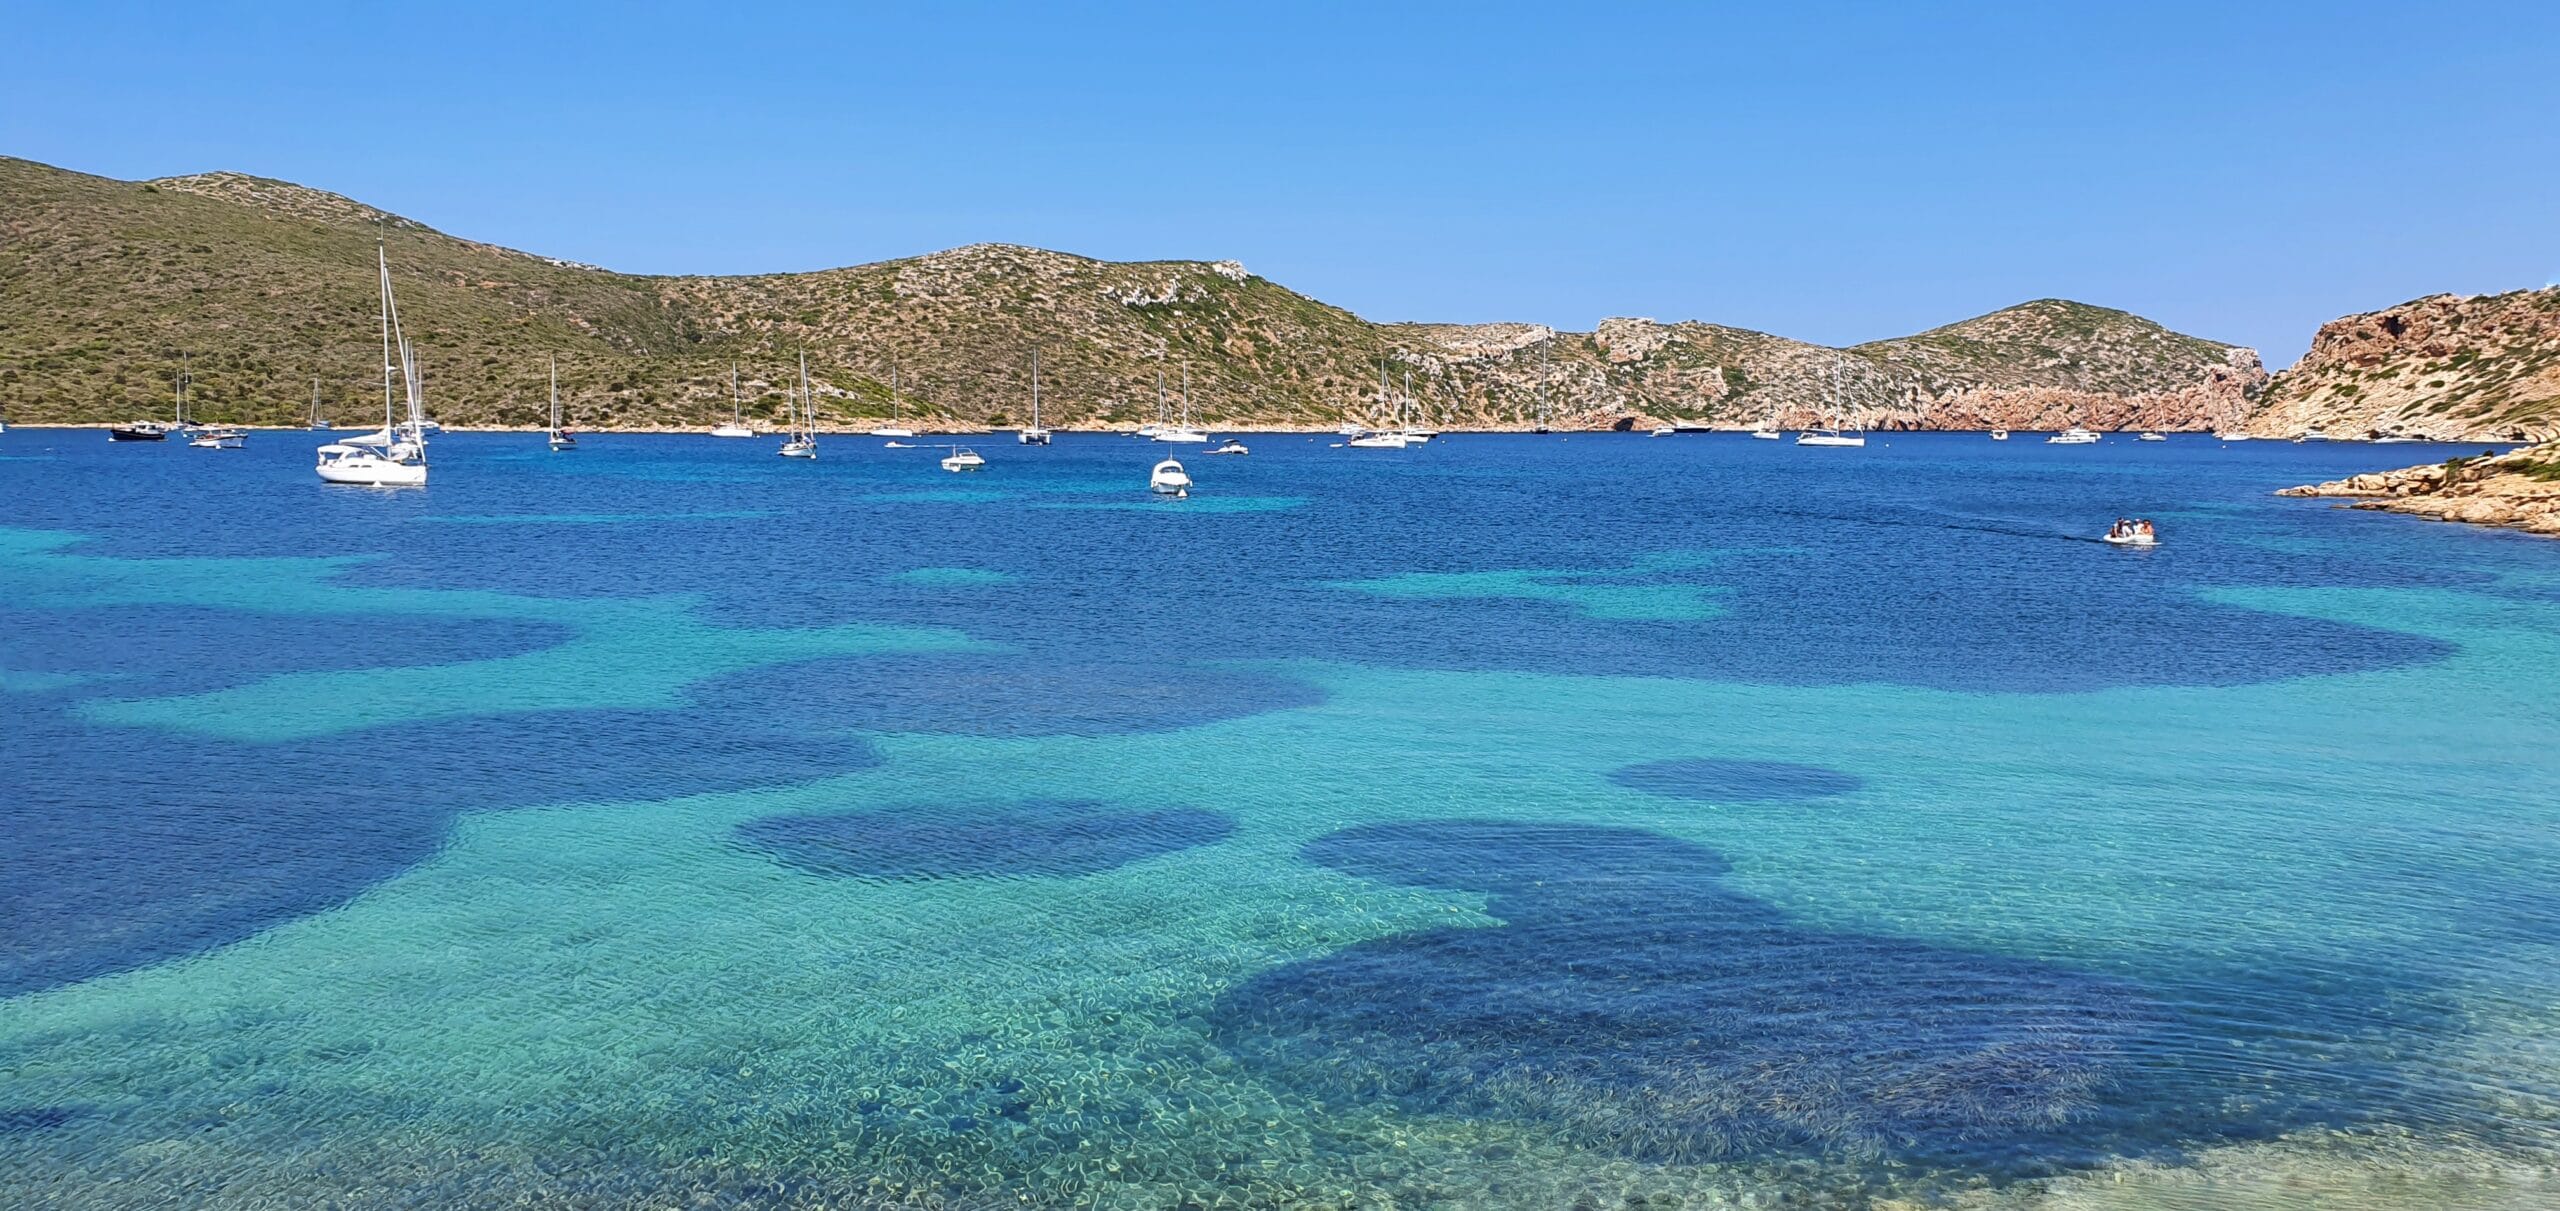 La Isla de Cabrera es una excursión obligada en tu visita a Mallorca